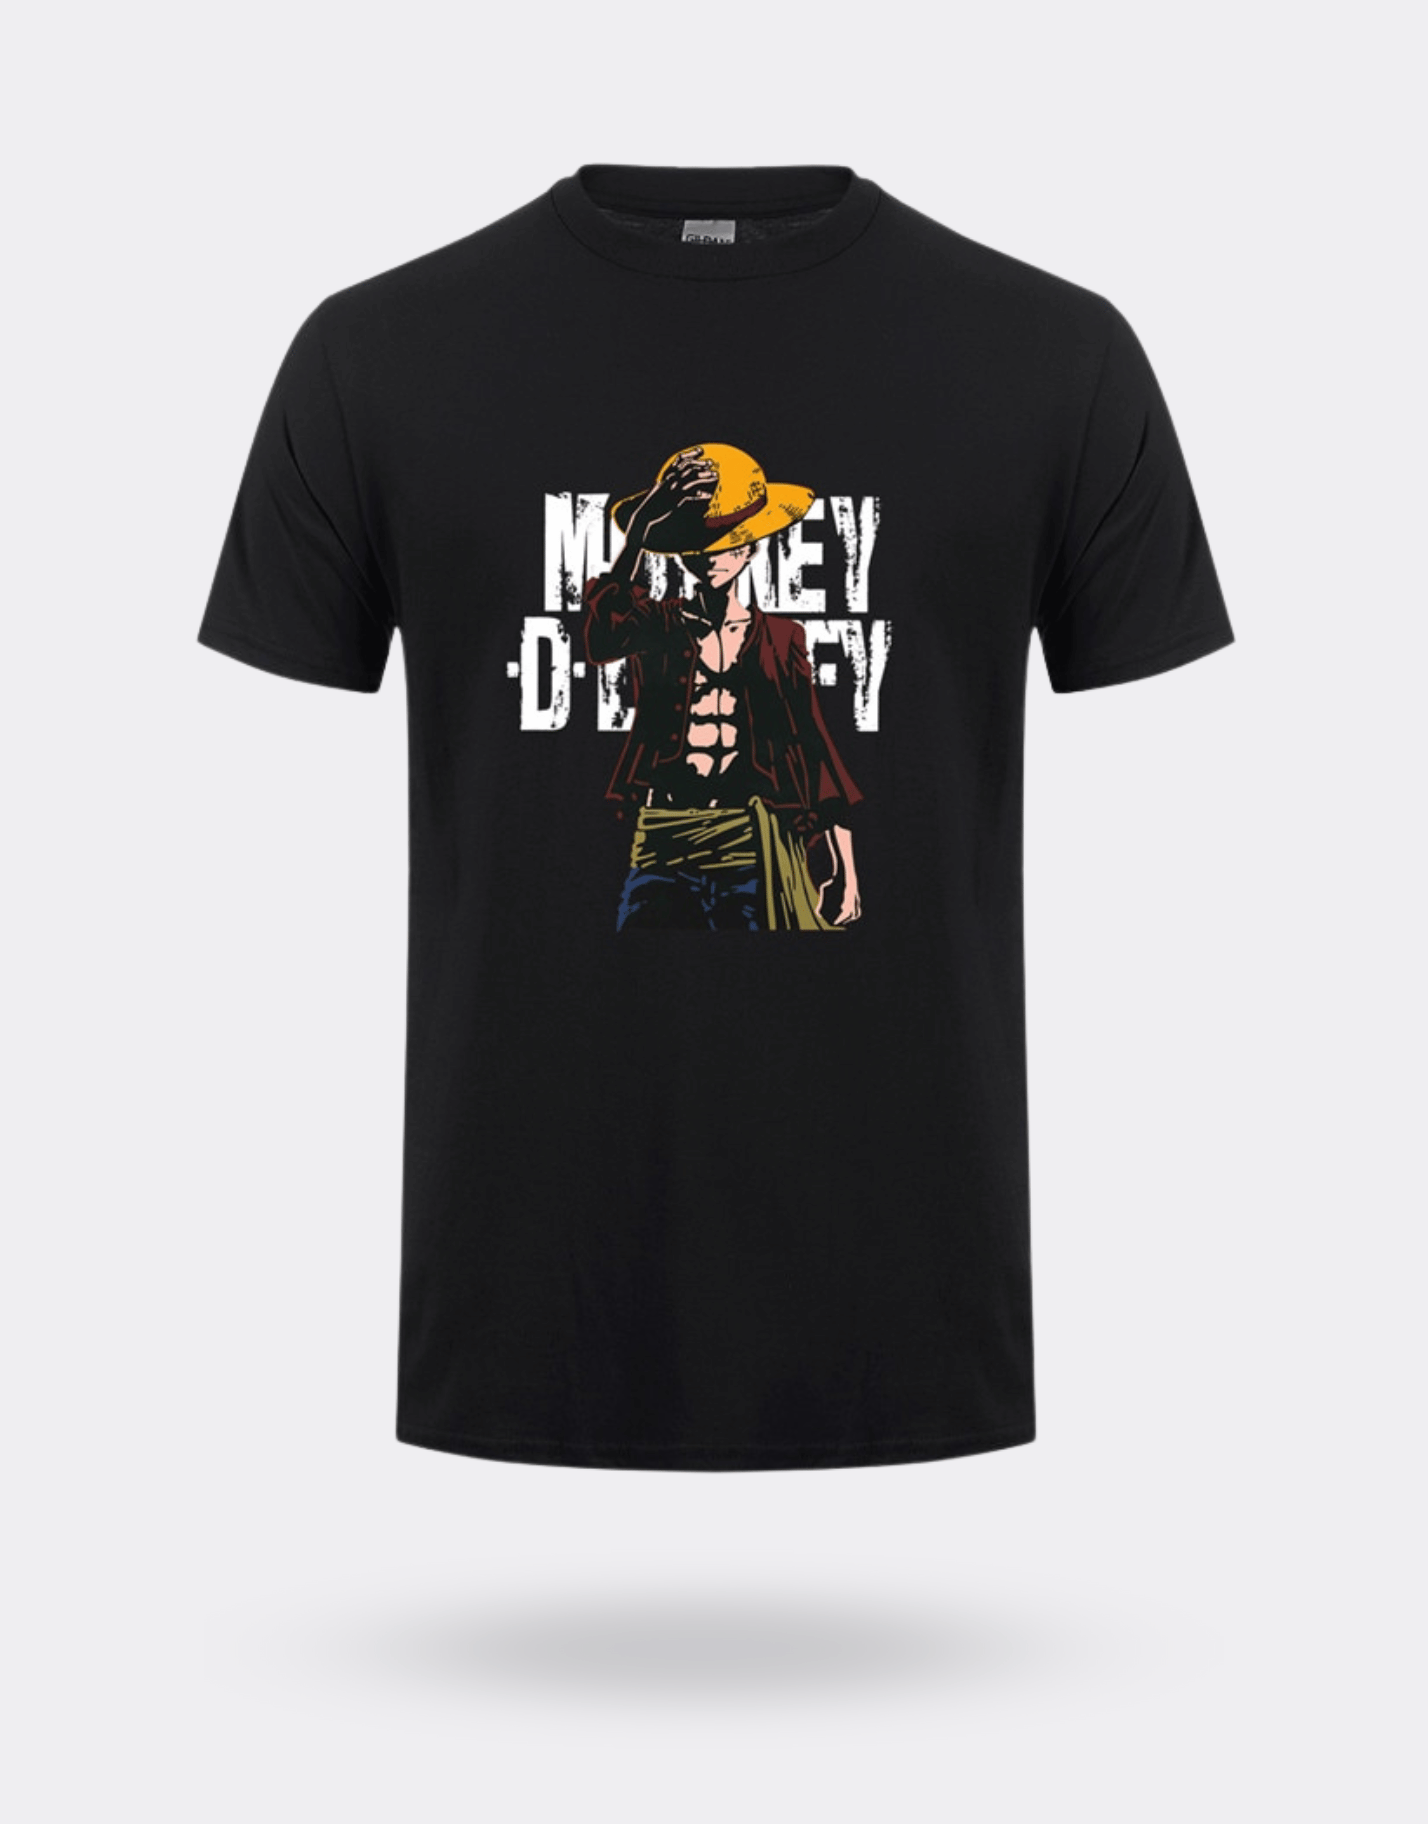 T-shirt One Piece Monkey D Luffy noir